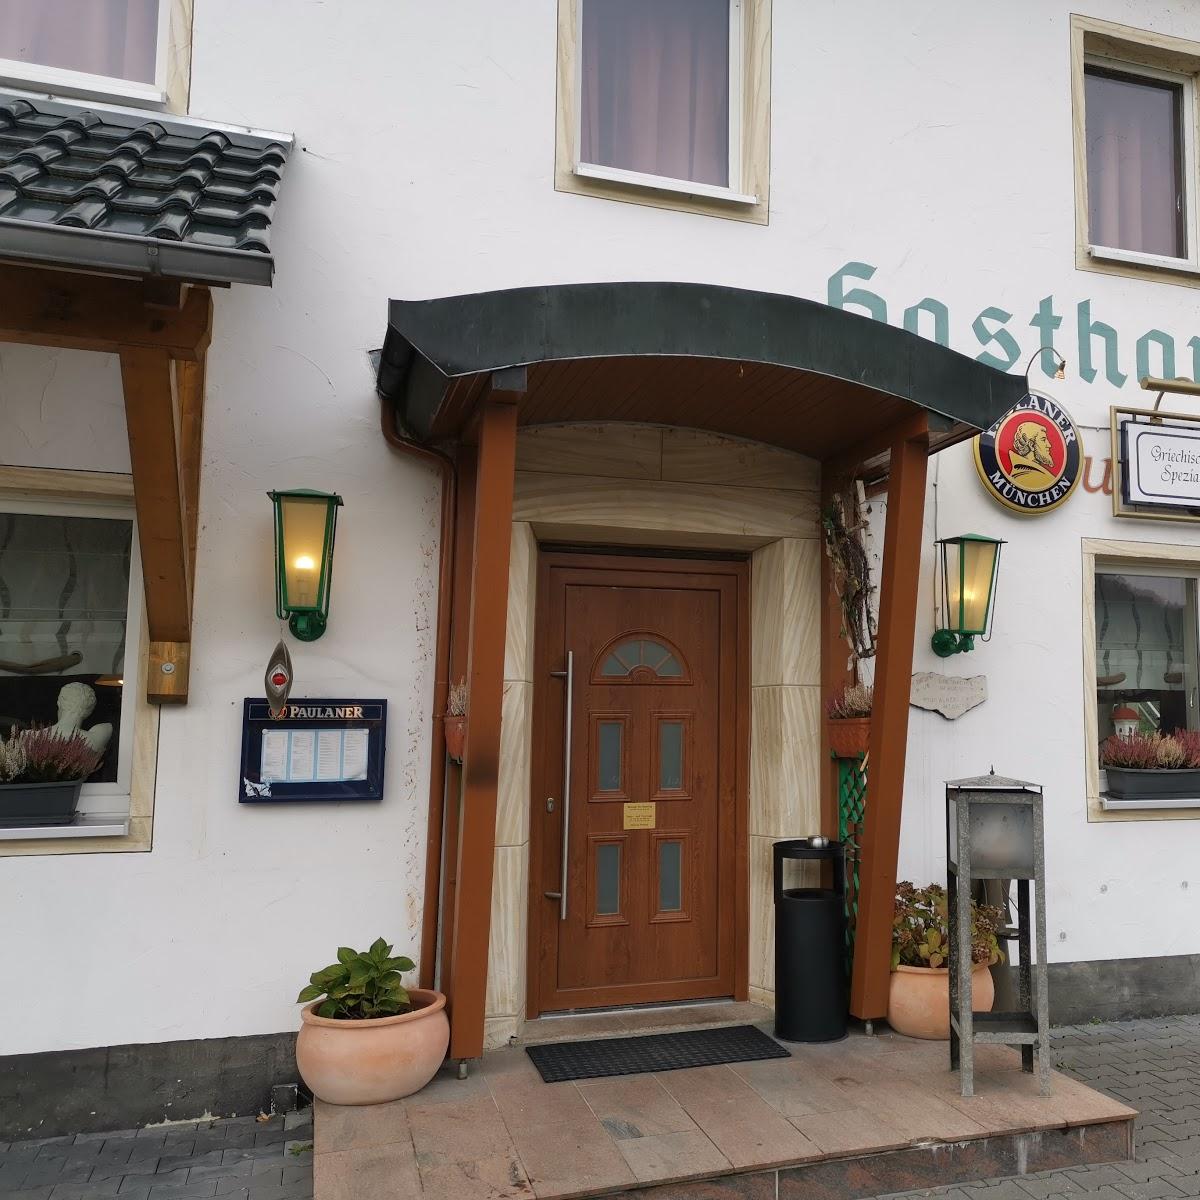 Restaurant "Gasthaus Maihof" in  Waischenfeld